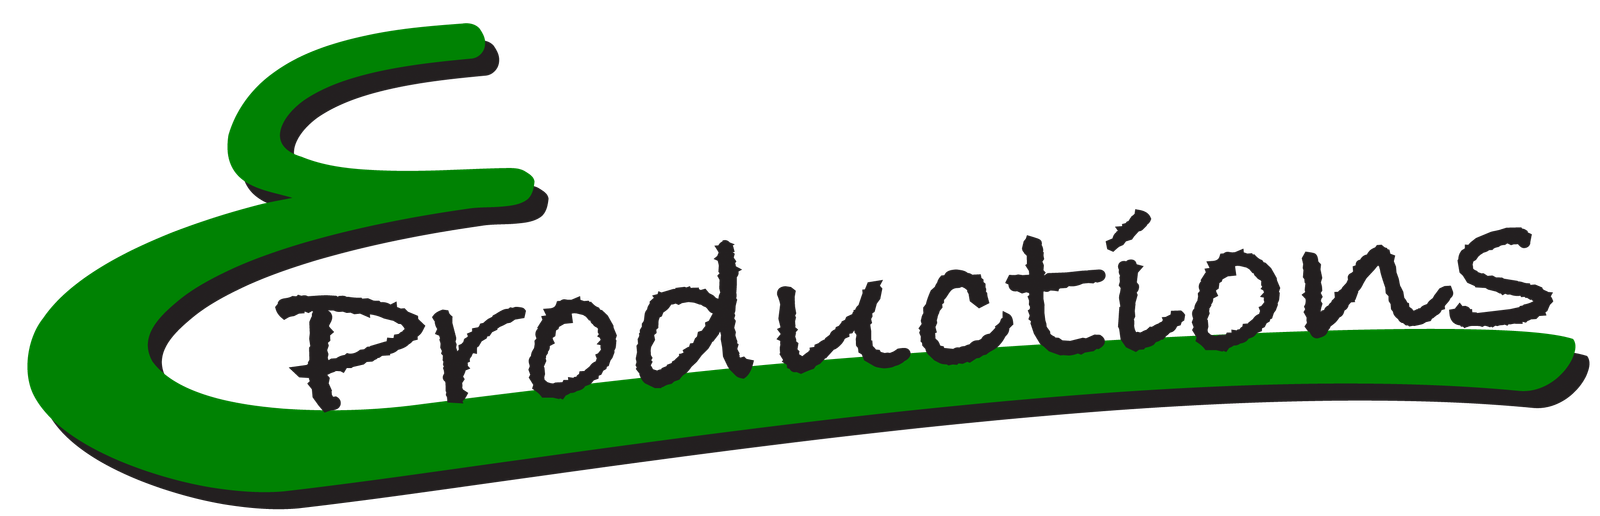 eproductions logo